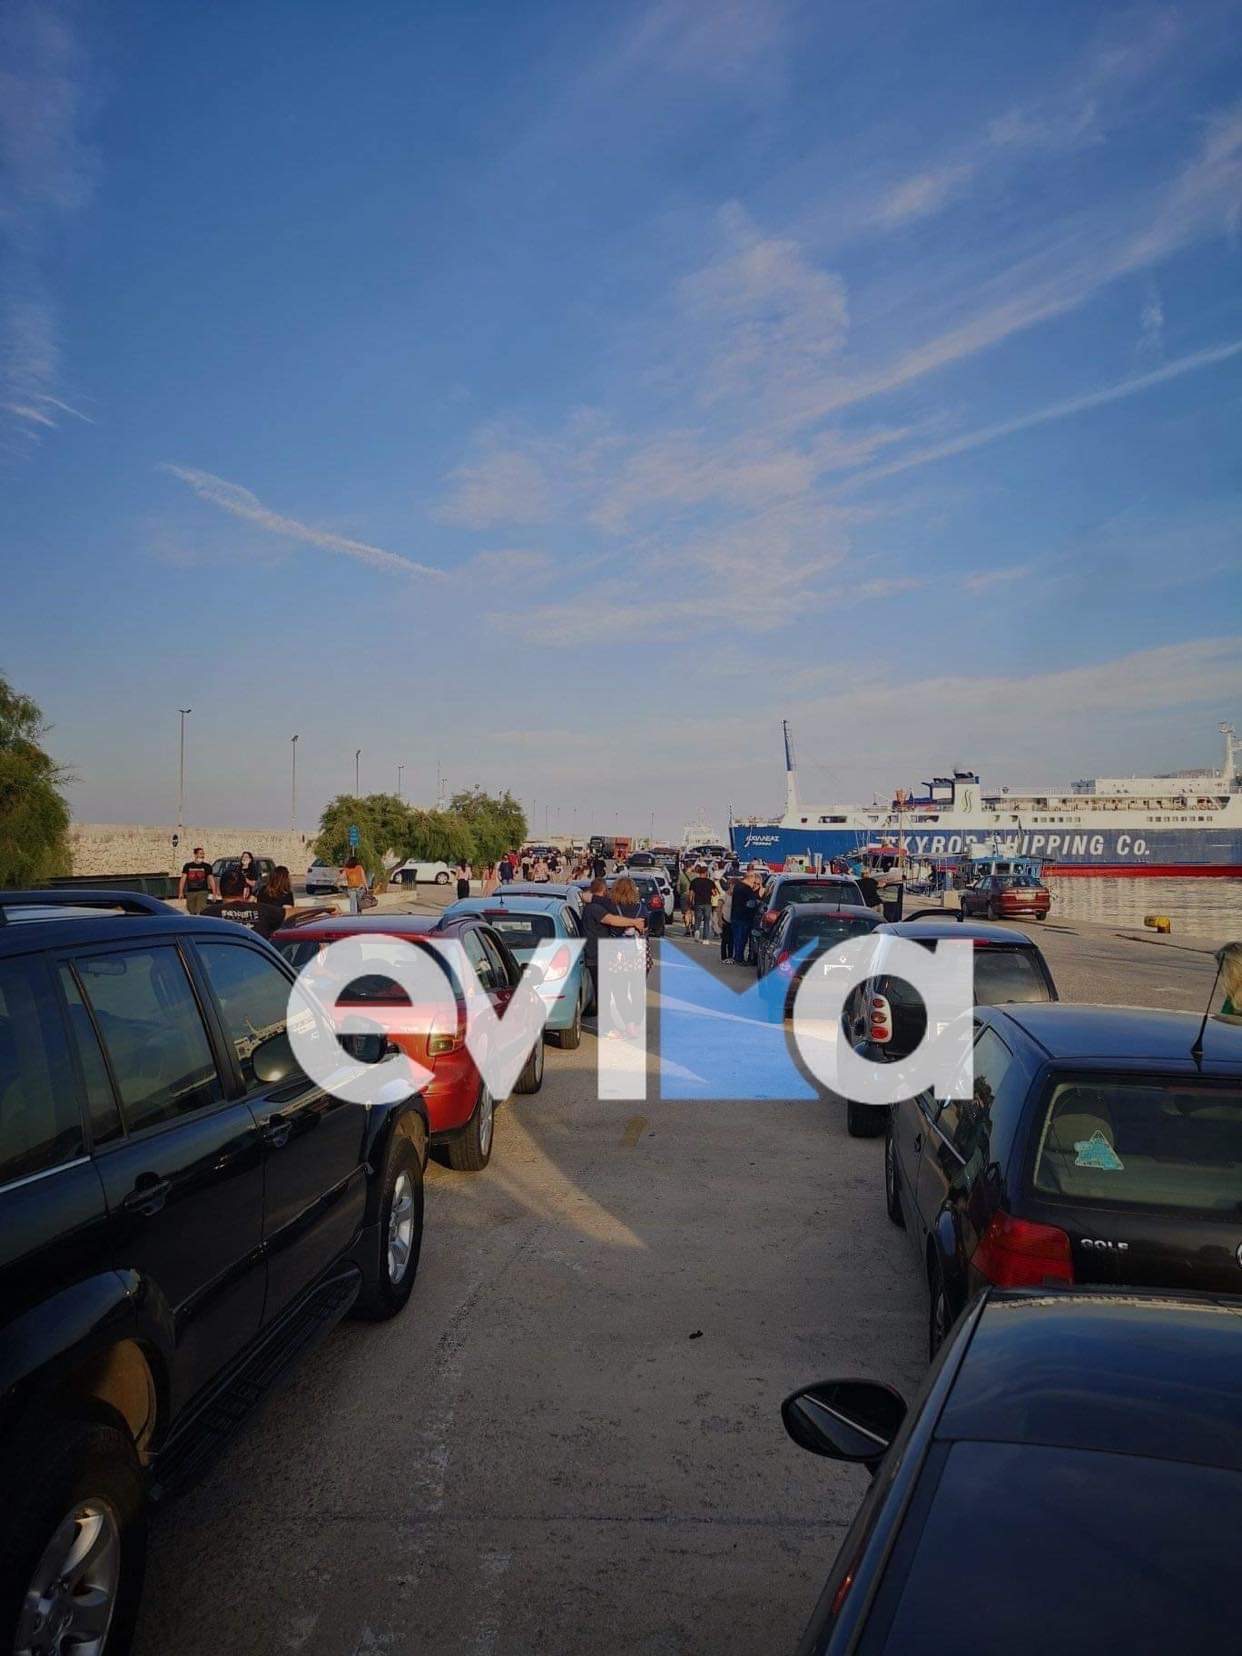 Το evima.gr στο λιμάνι της Κύμης: Ουρές ΙΧ μέχρι και έξω από το λιμάνι για επιβίβαση στο πλοίο της Σκύρου [εικόνες]